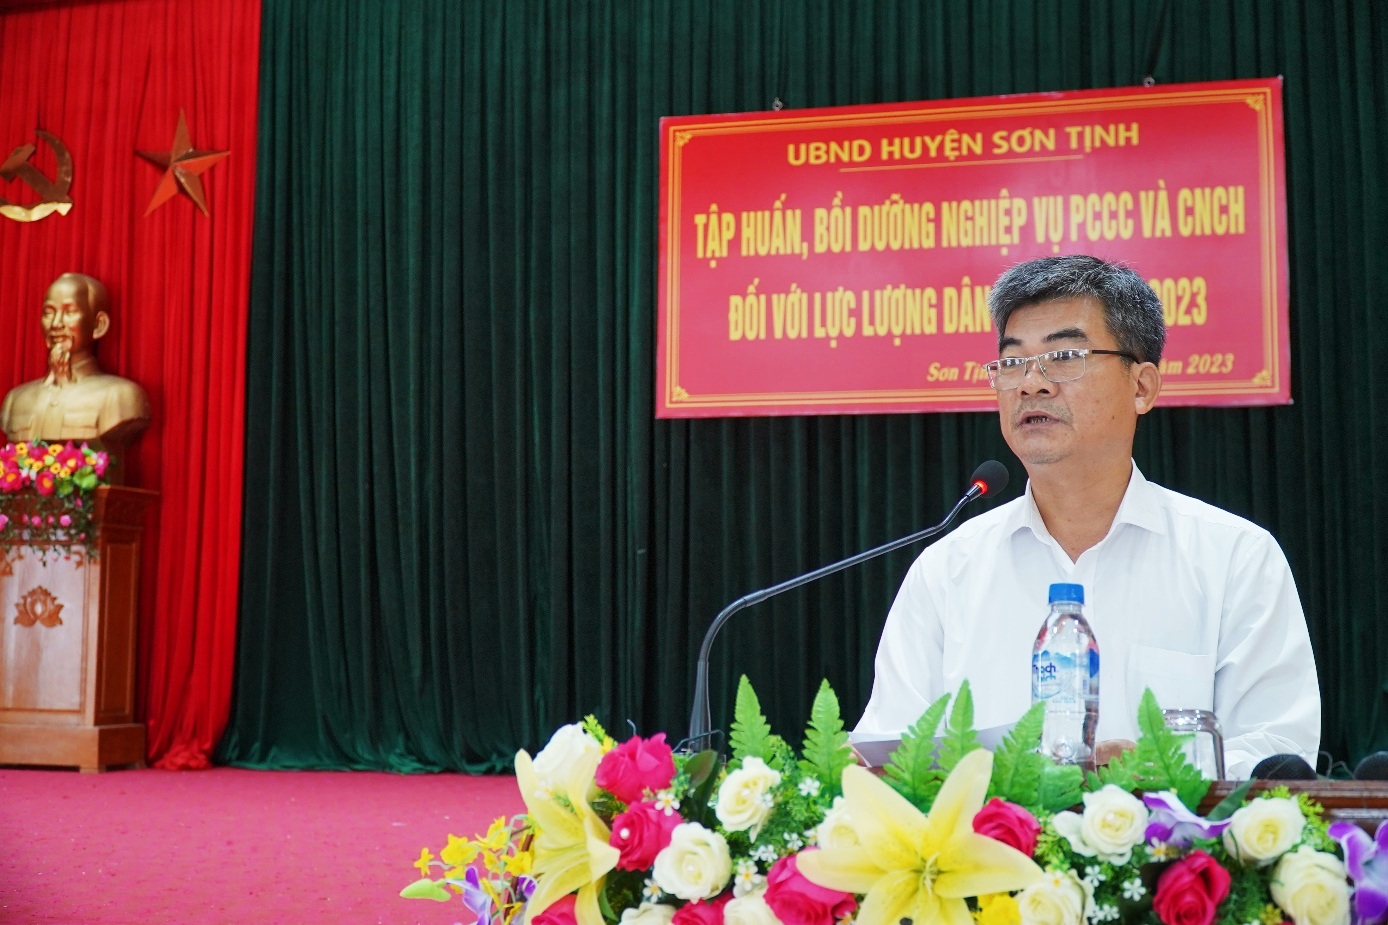 Sơn Tịnh: Tập huấn công tác PCCC và CNCH cho đội dân phòng năm 2023.